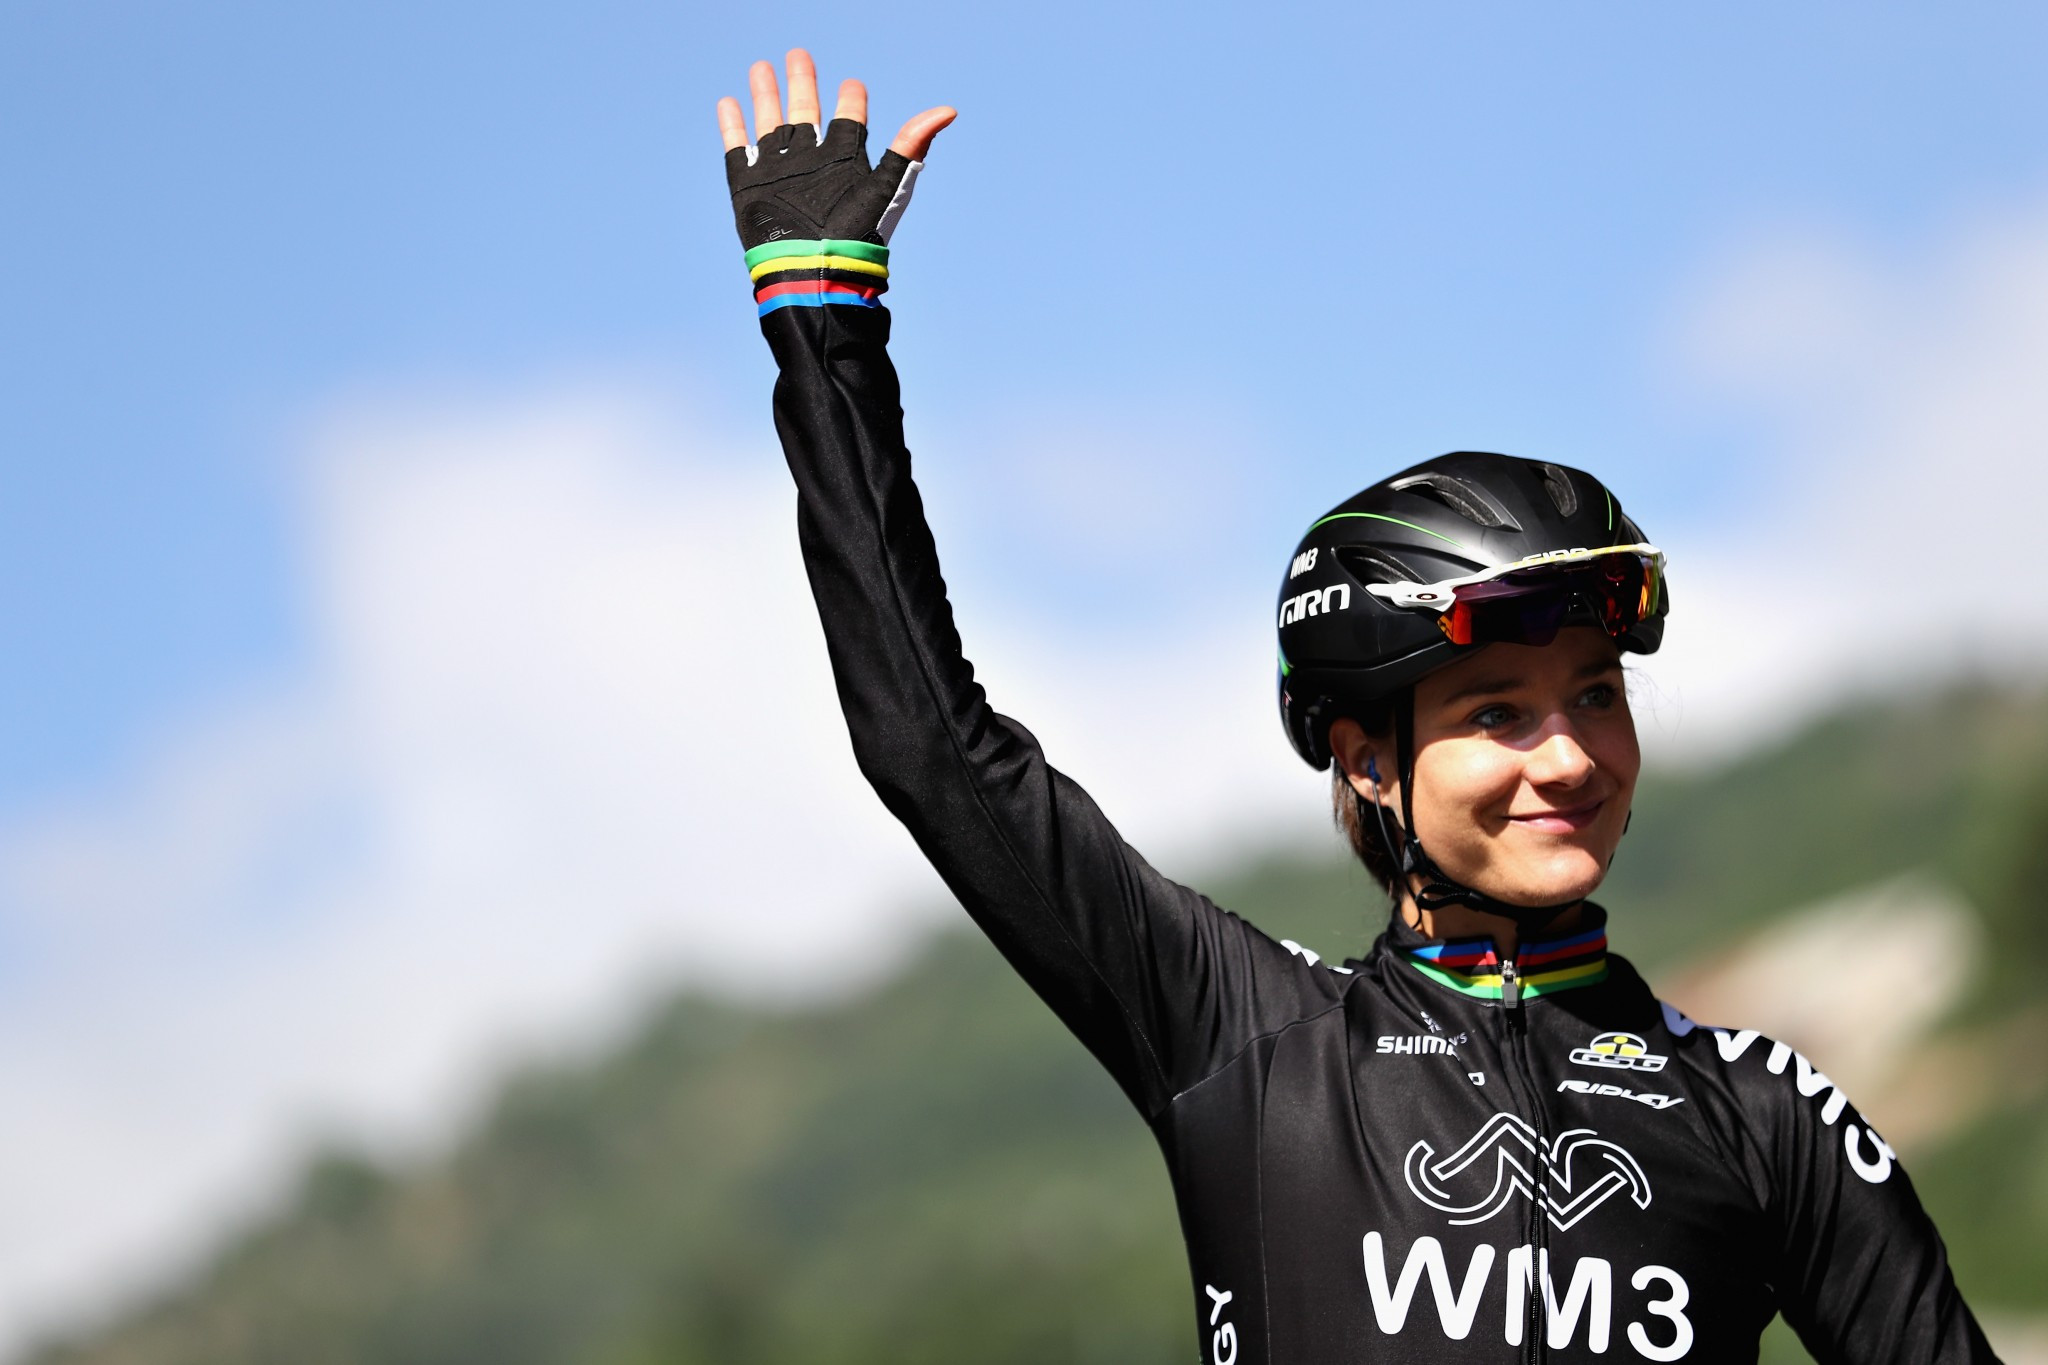 Vos takes home Ladies Tour of Norway title